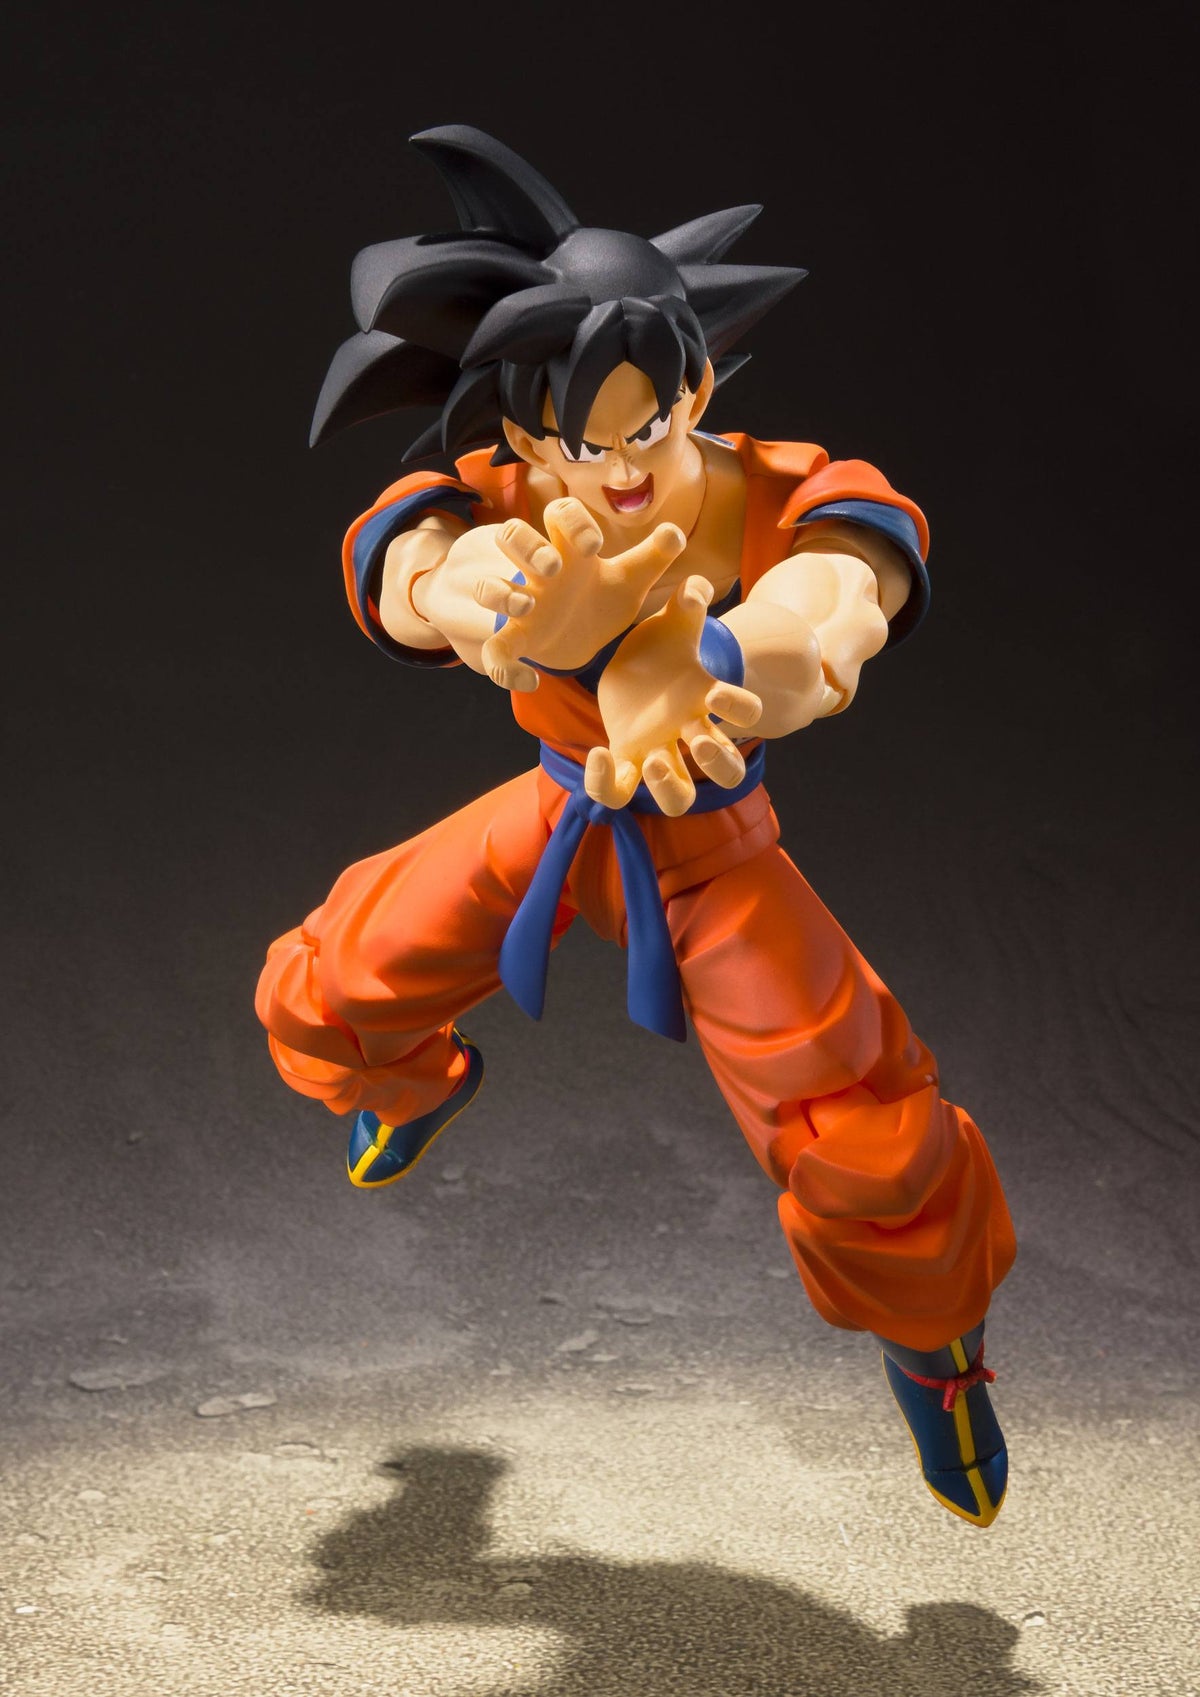 Dragon Ball Z - Son Goku - A Saiyan Raized on Earth Ver. S.H. Figuarts Action Figure (Bandai)